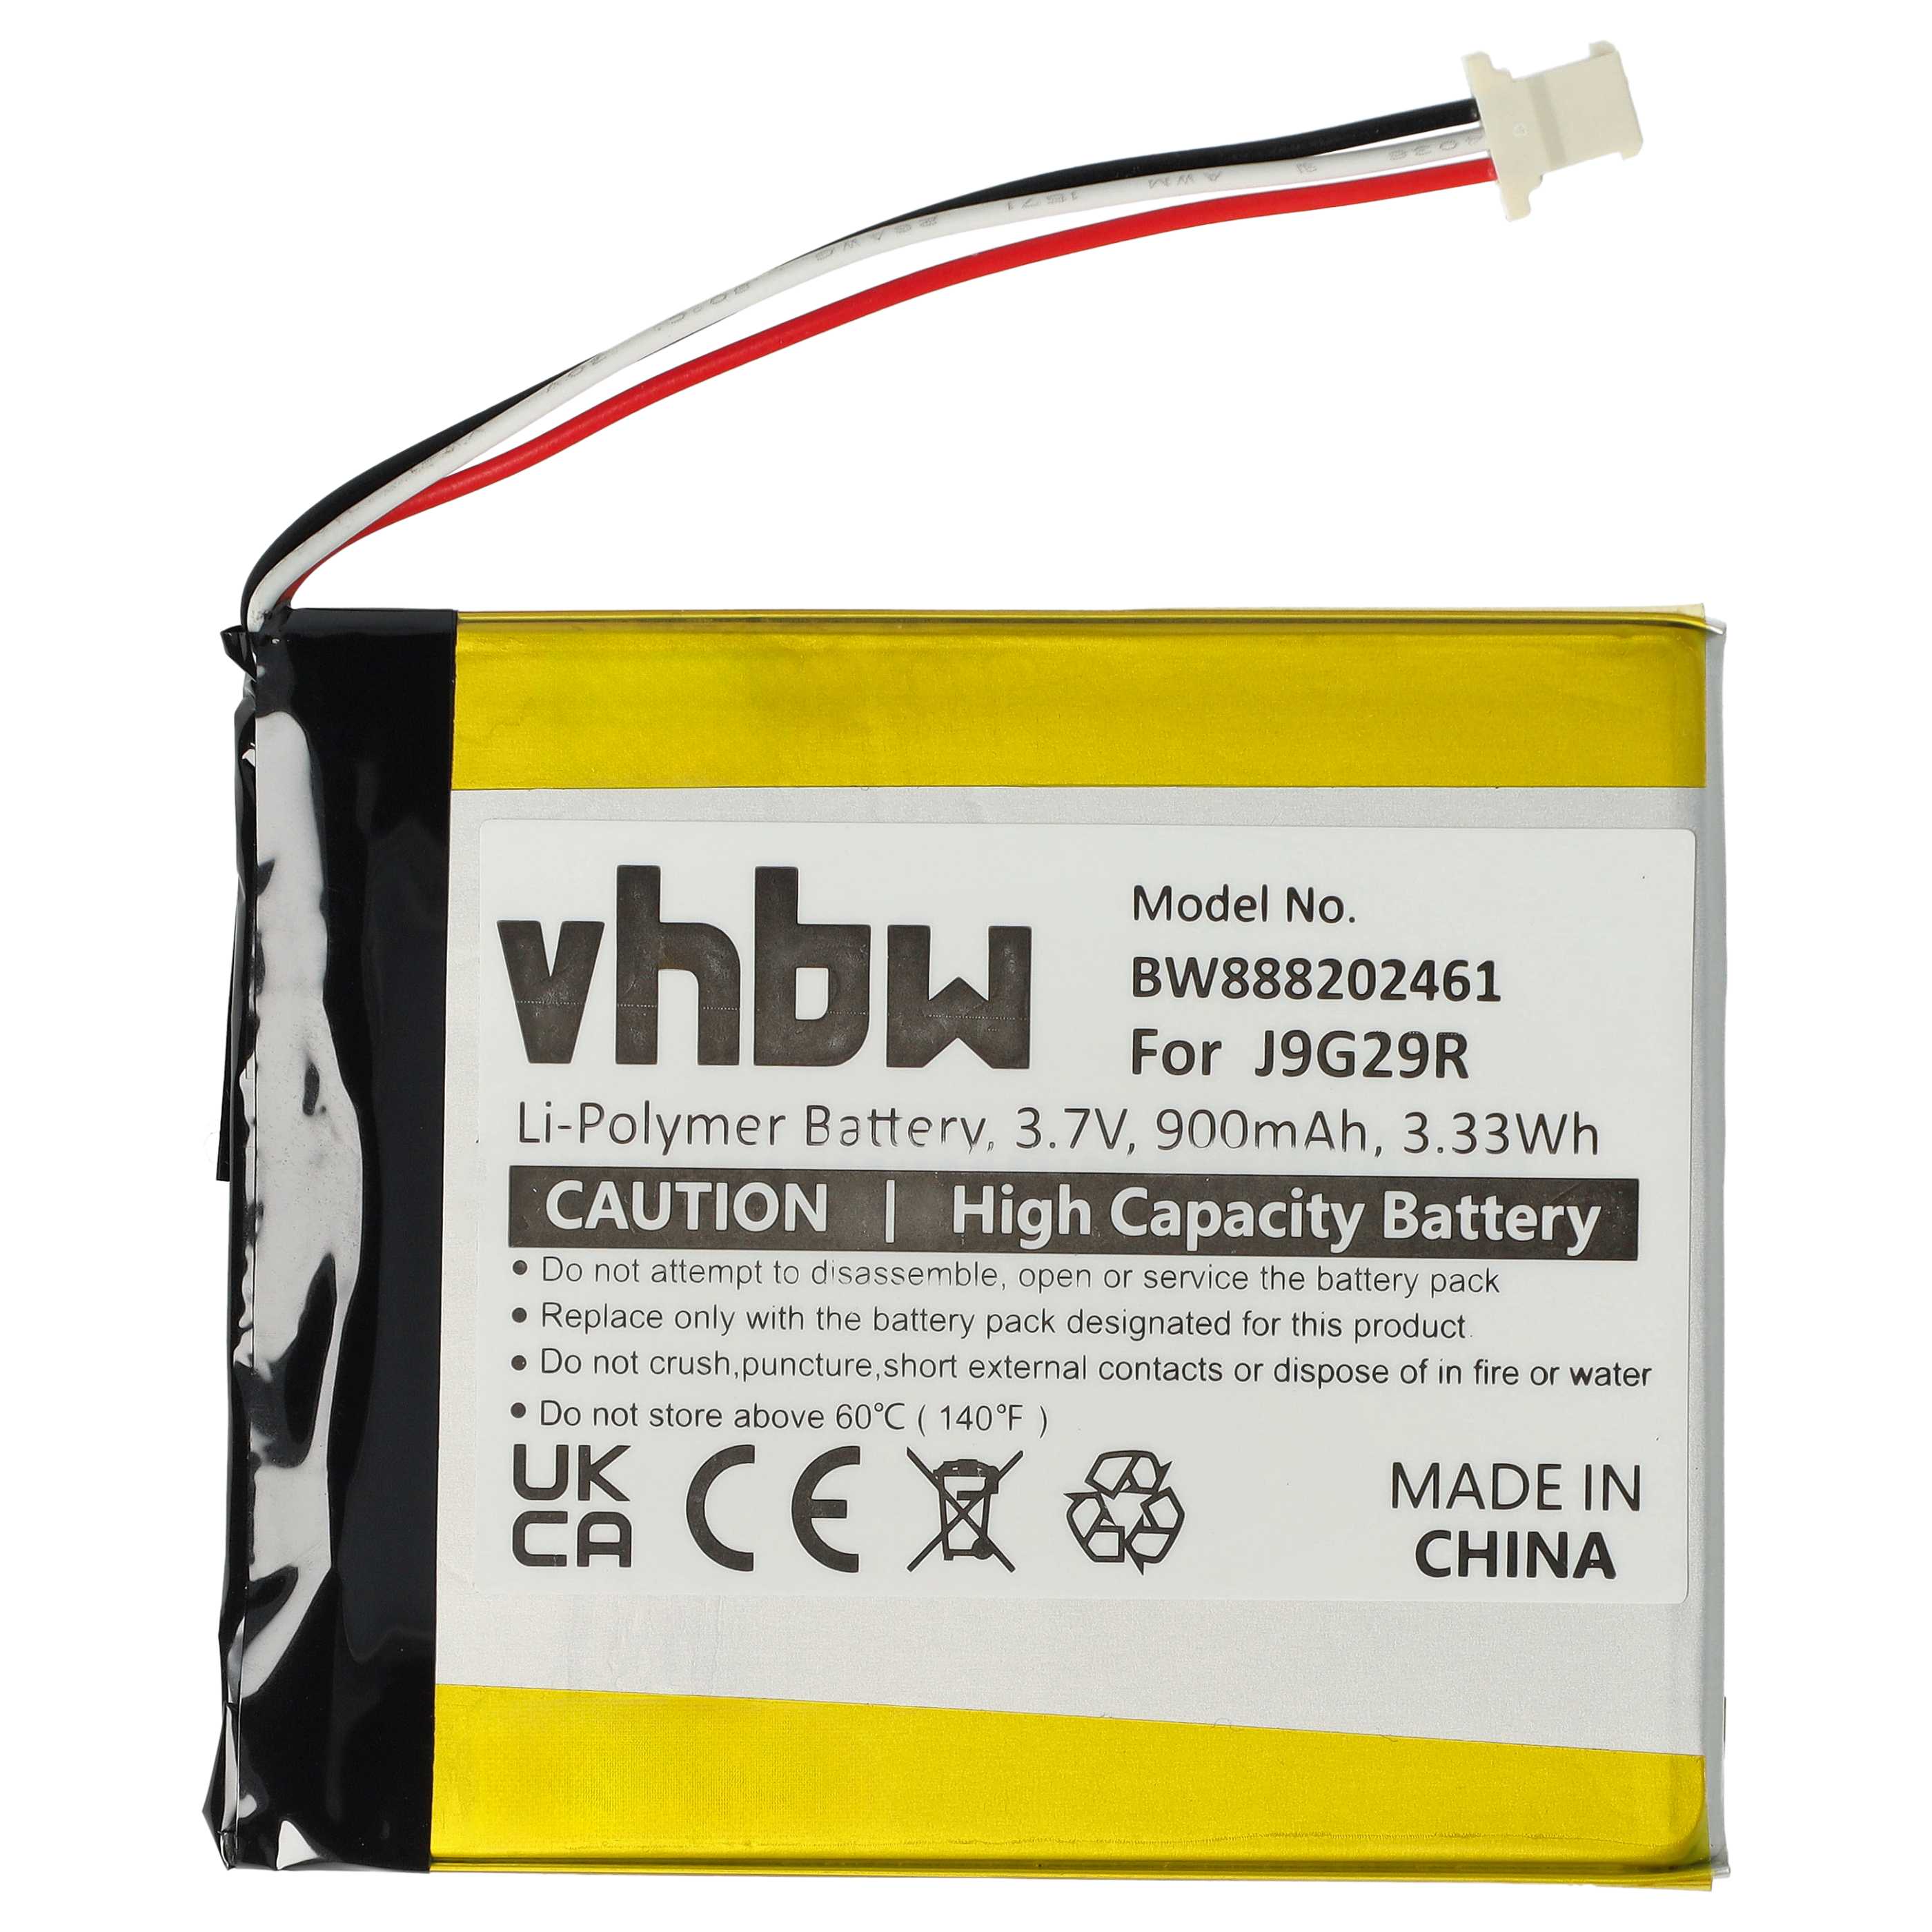 Batterie remplace Amazon 26S1019, 58-000226 pour liseuse ebook - 900mAh 3,7V Li-polymère